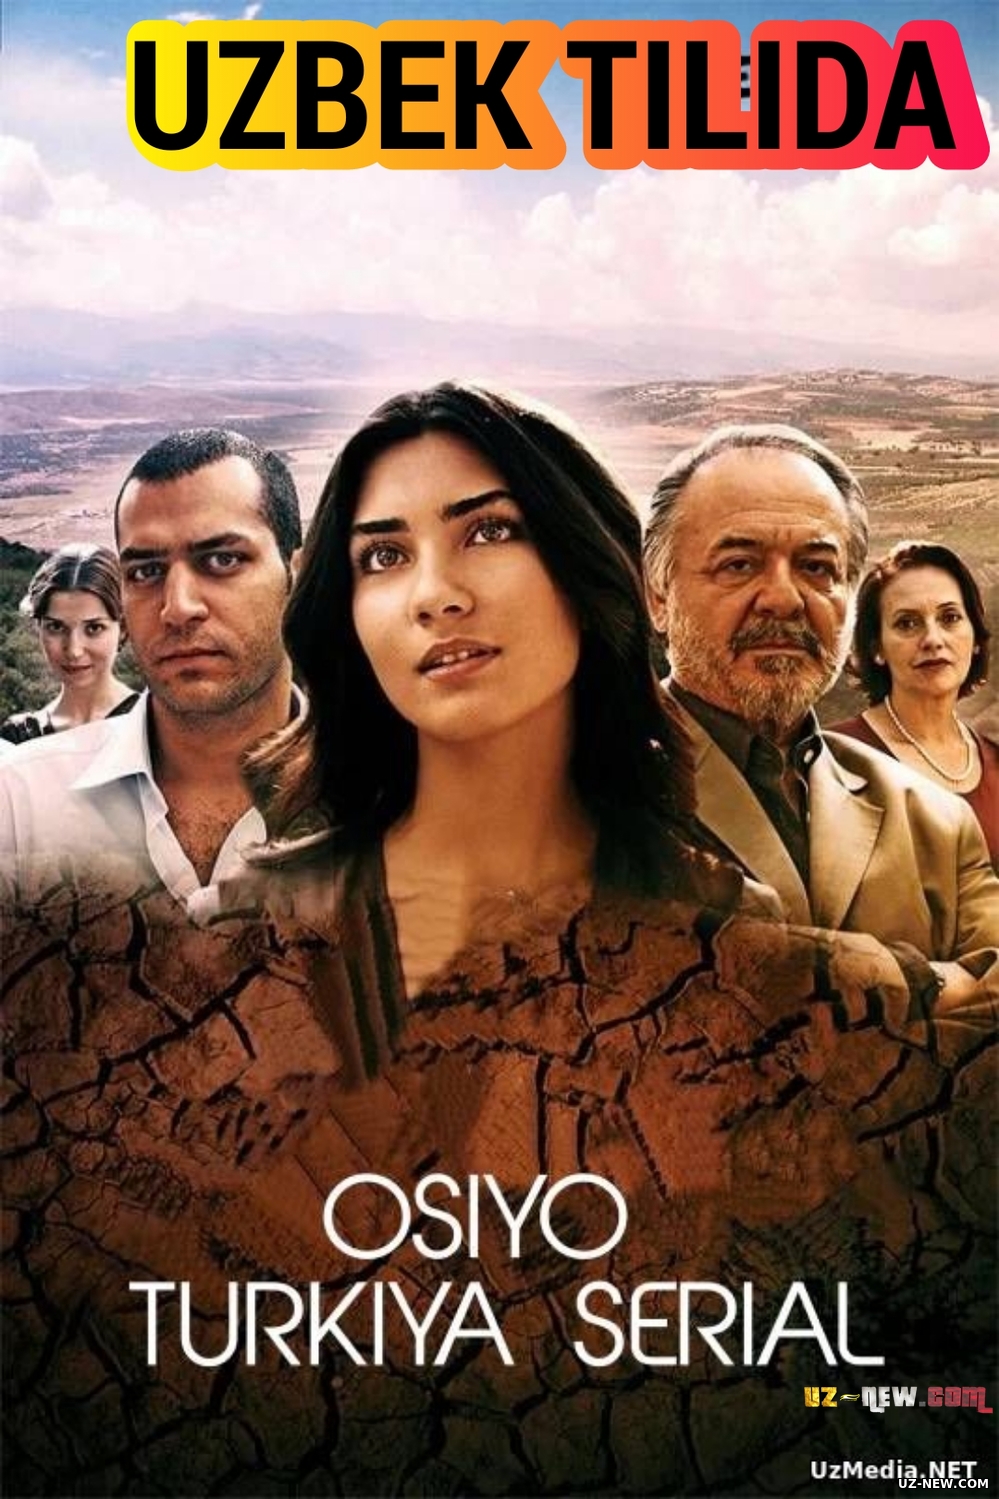 Osiyo / Asi Turkiya seriali Barcha qismlar Uzbek tilida